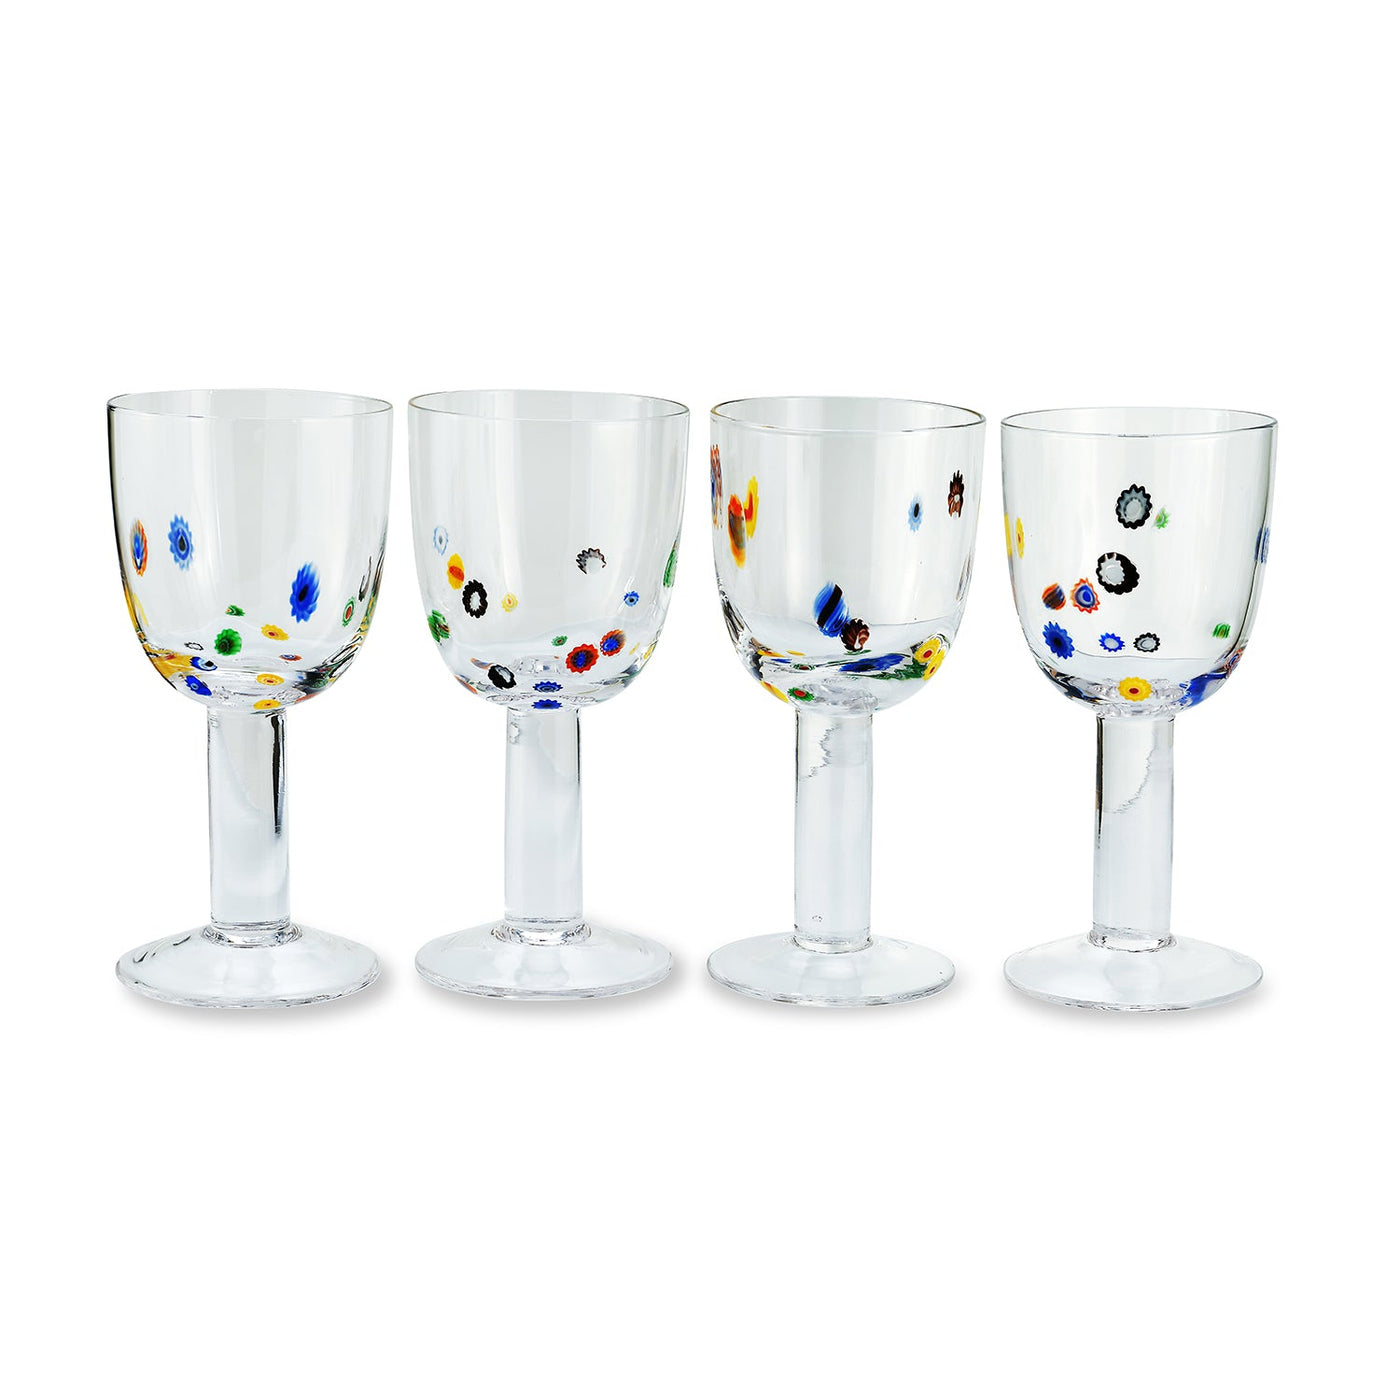 Millefiori Wine Glass (4) Multicolored Chefanie 